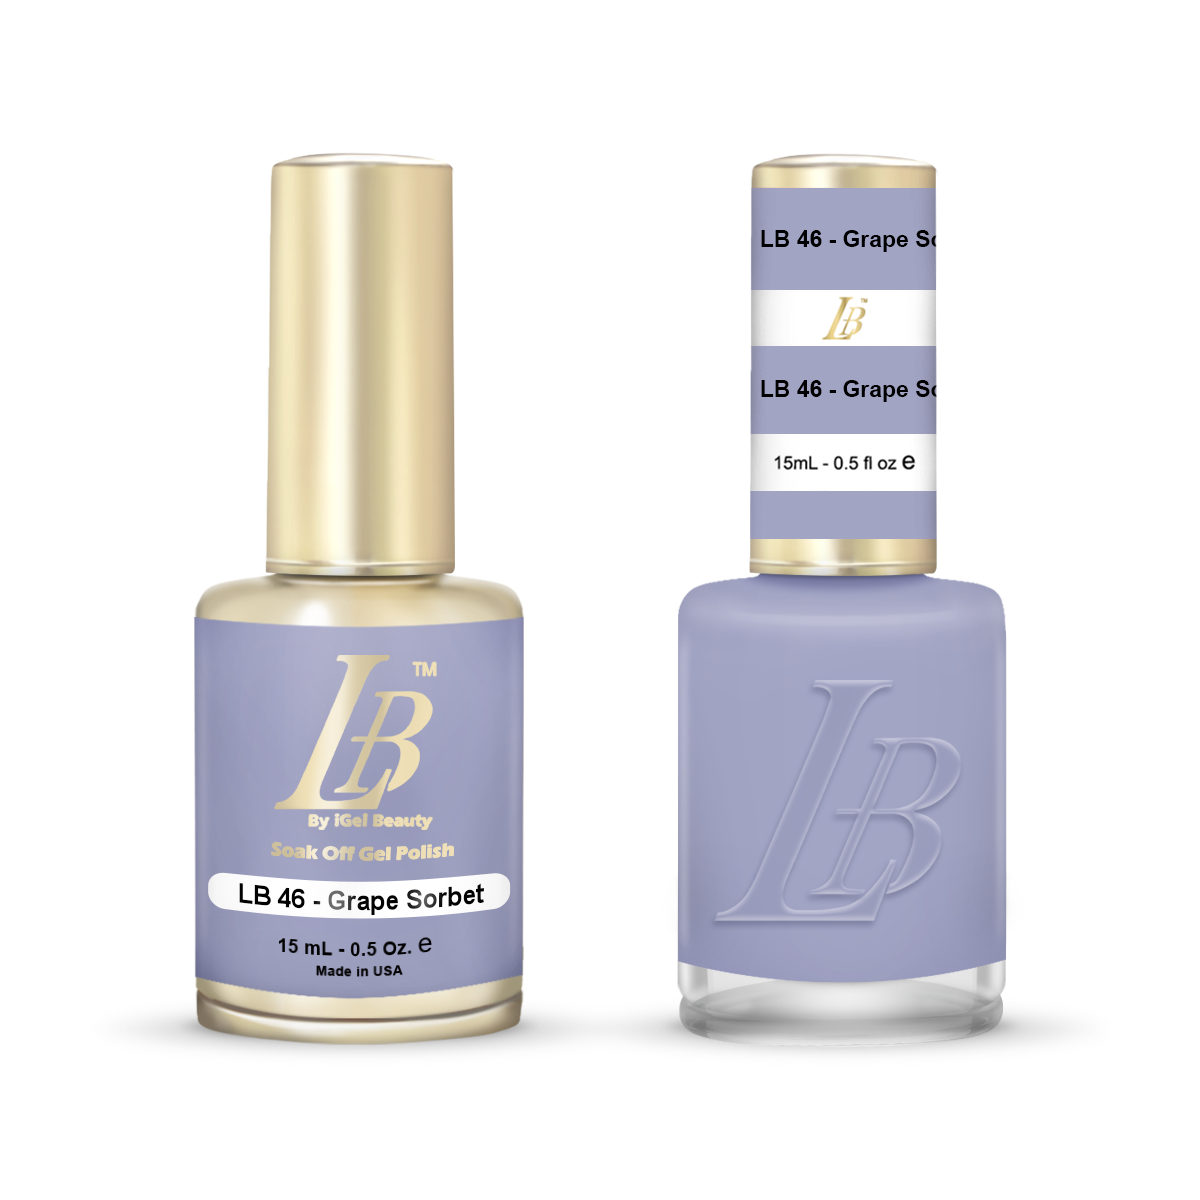 LB Duo - LB046 Grape Sorbet